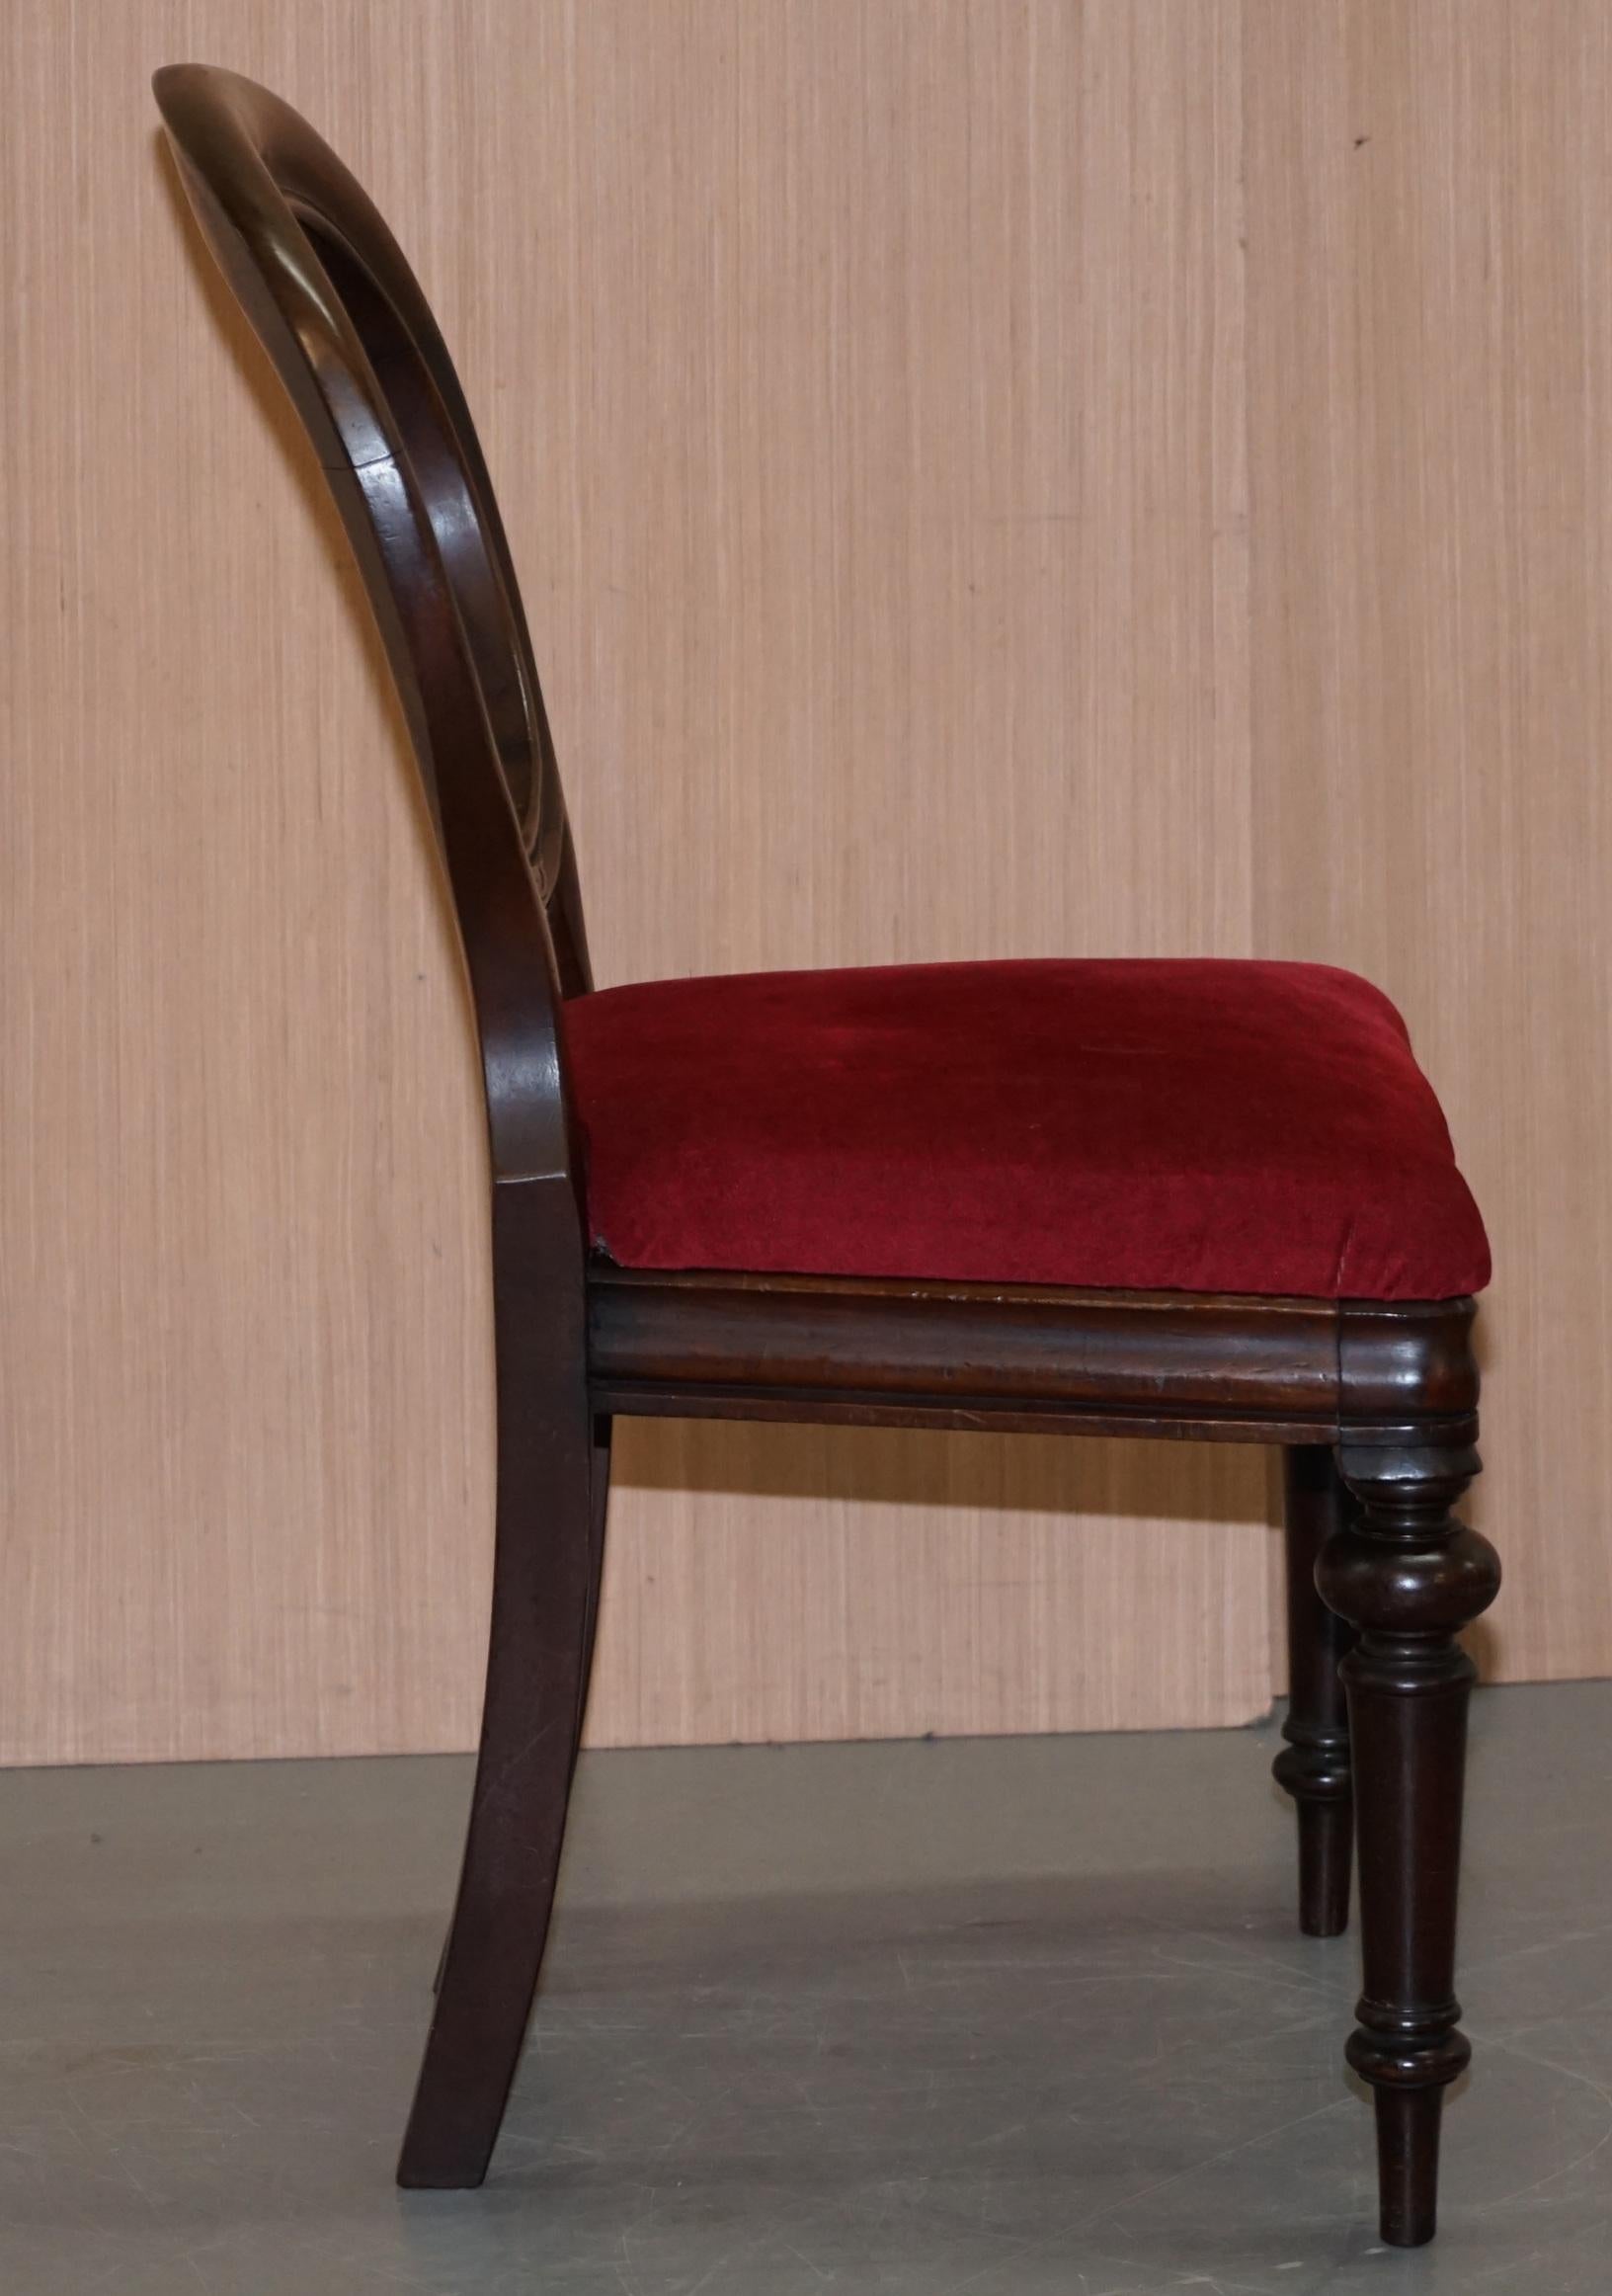 Velvet Nice Edwardian Medallion Spoon Back Chair for Dressing Table or Desk Office Use